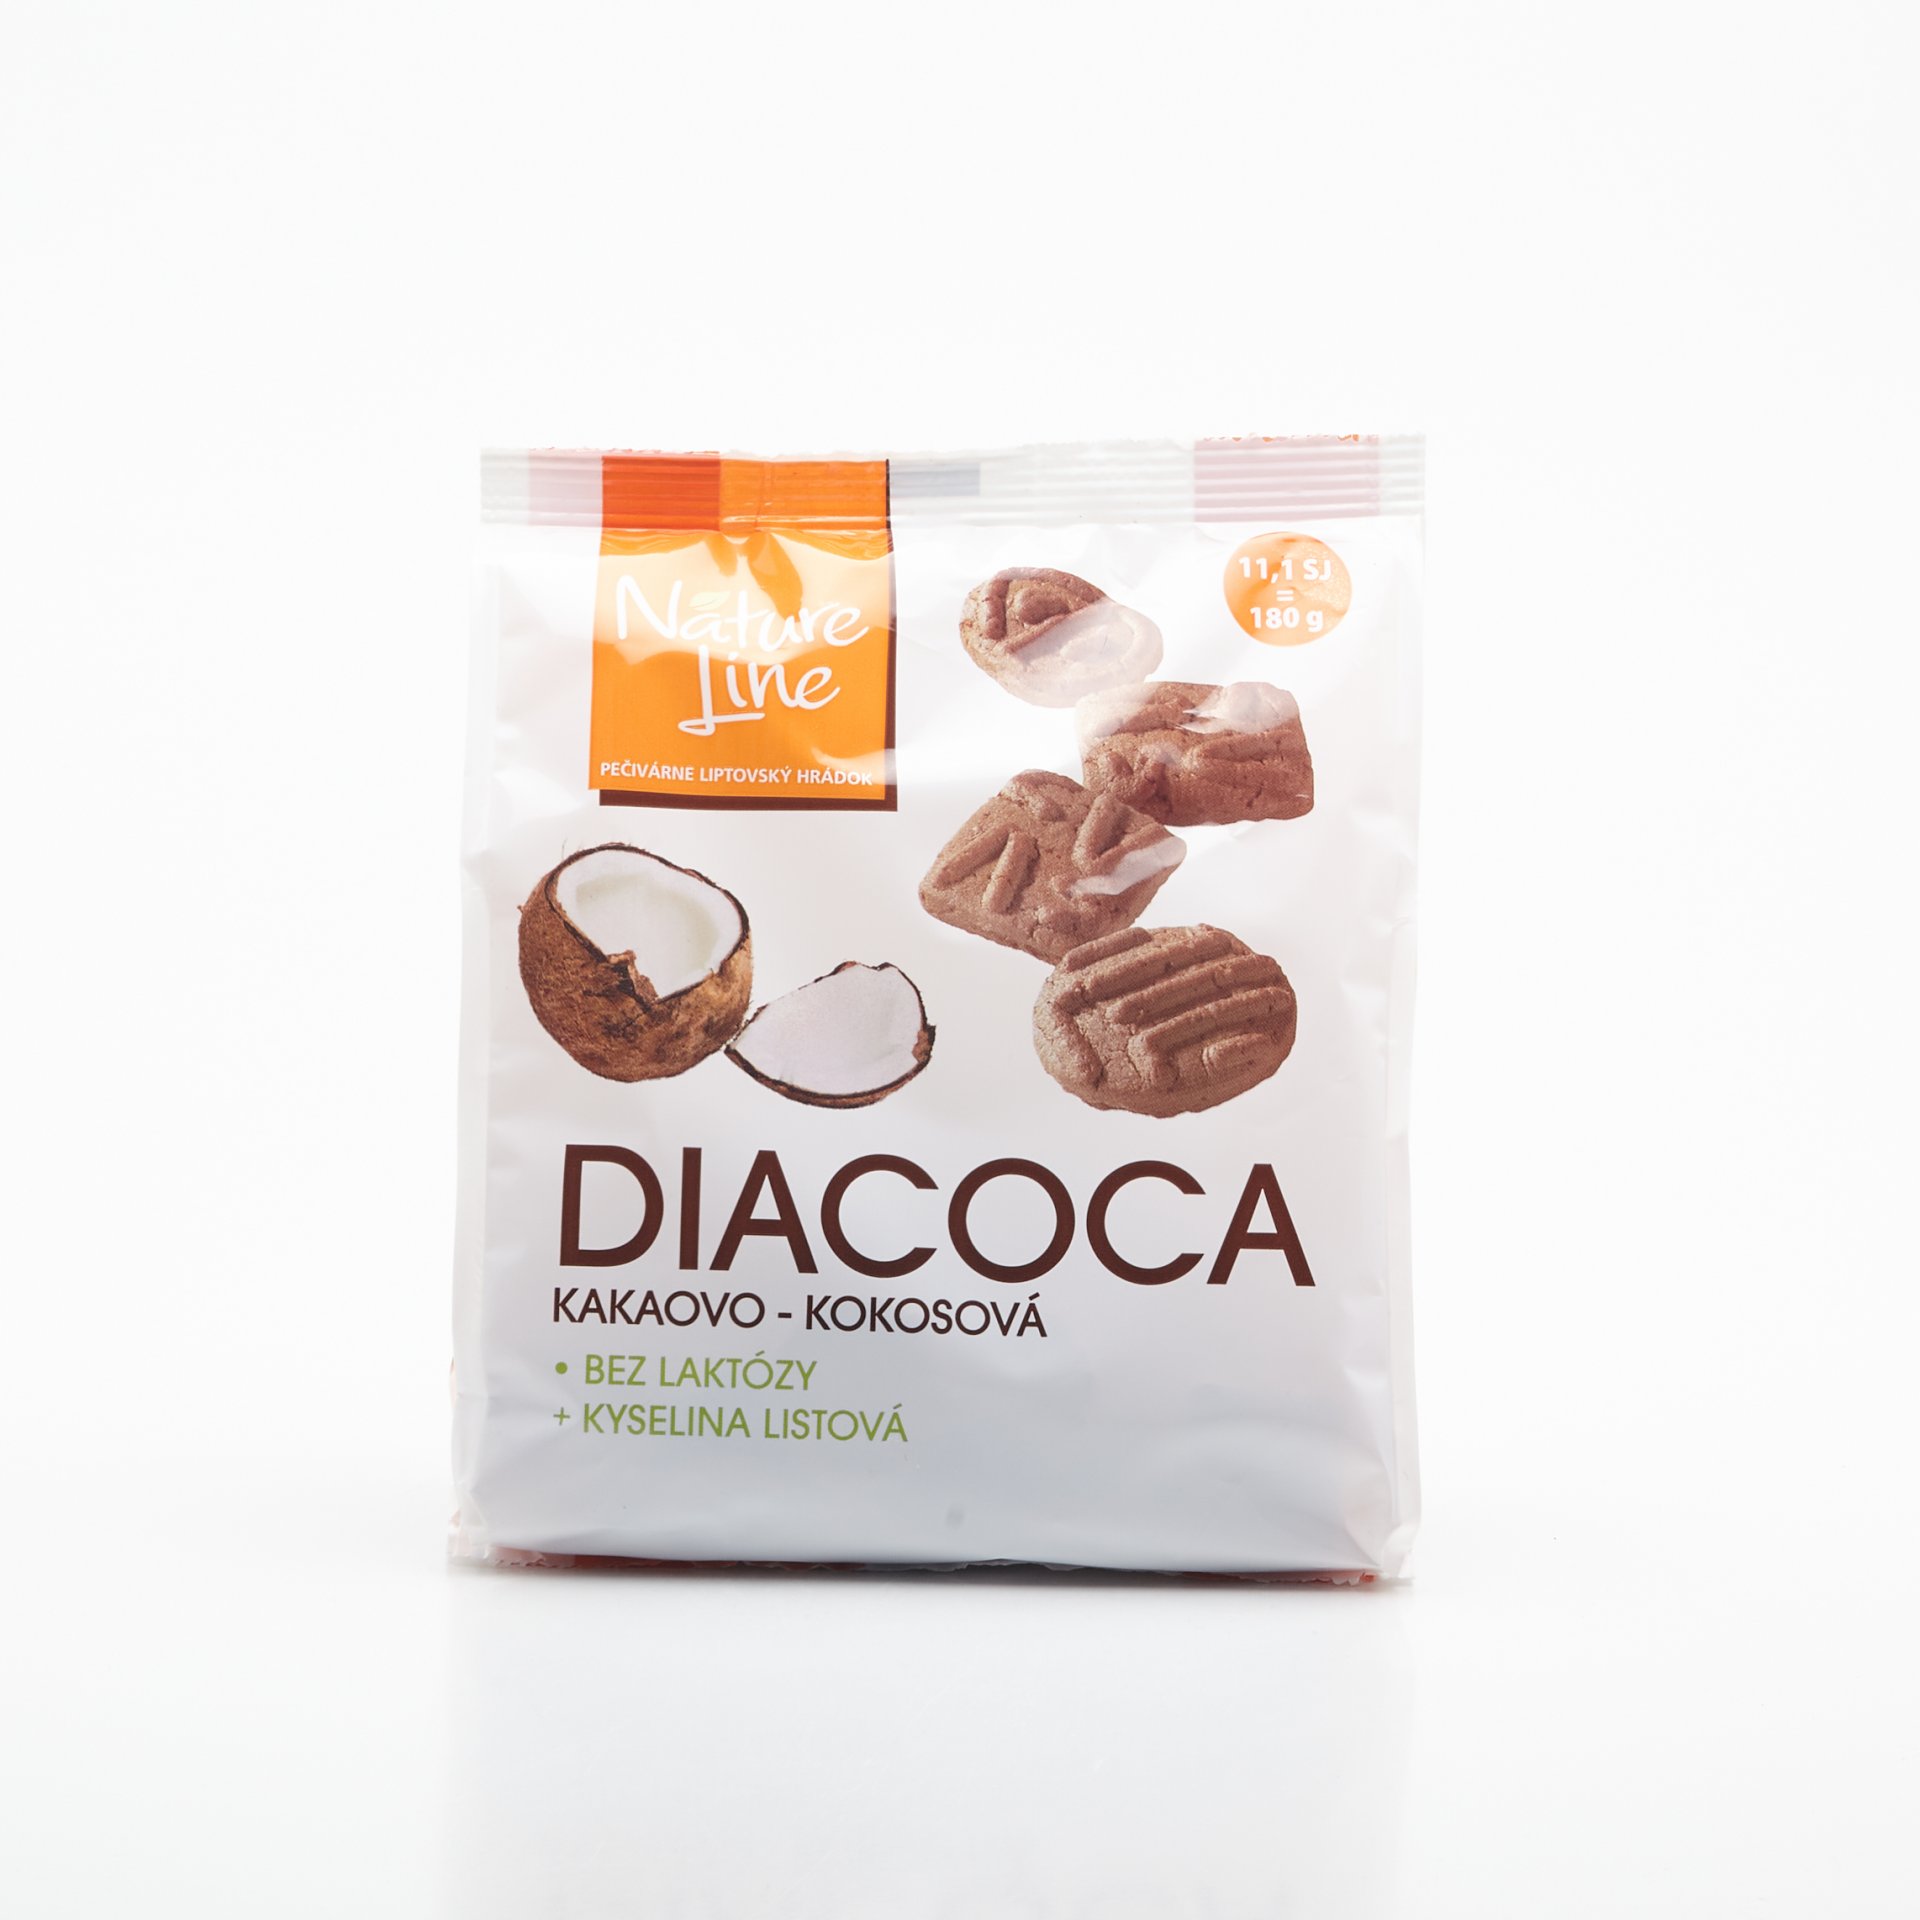 DIACOCA suš. s kakaovo-kokos. prí. 180g